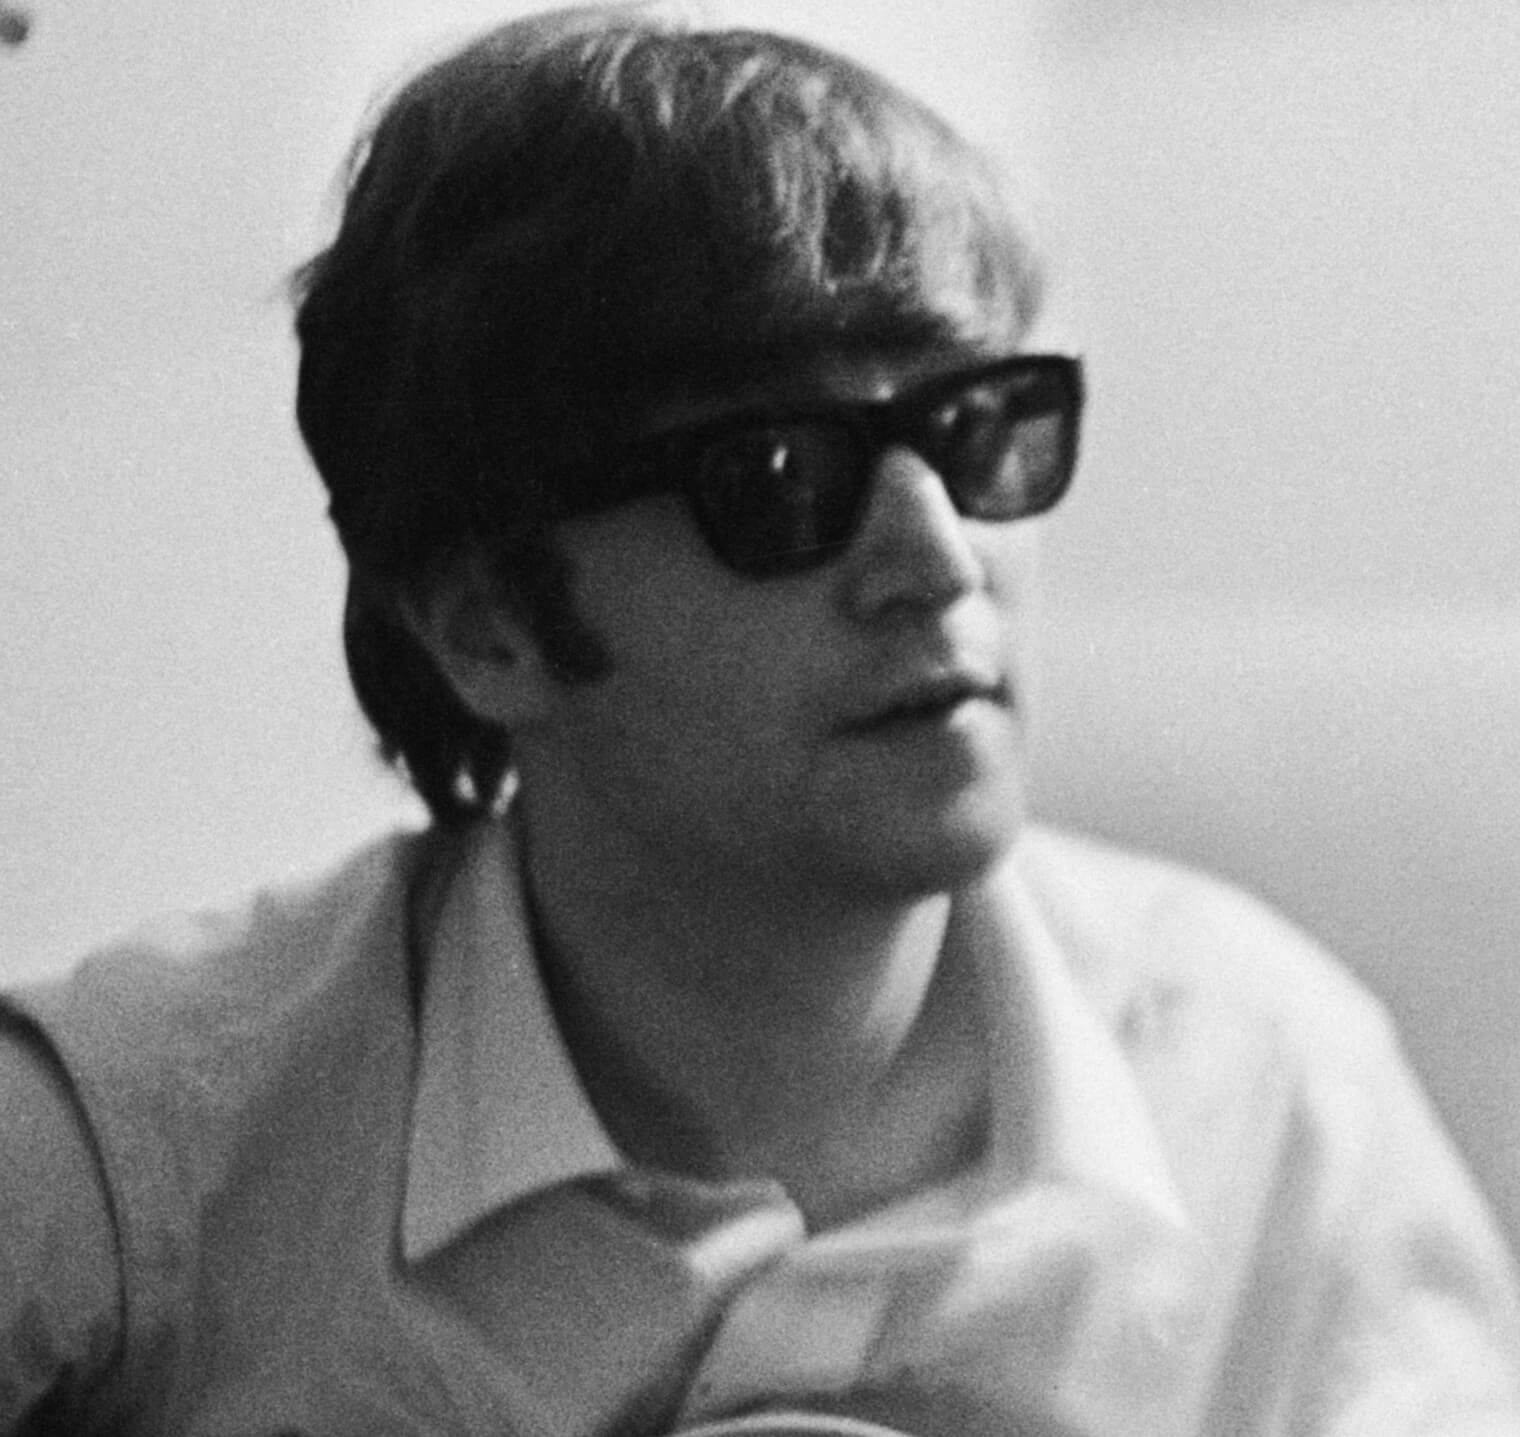 John Lennon in glasses